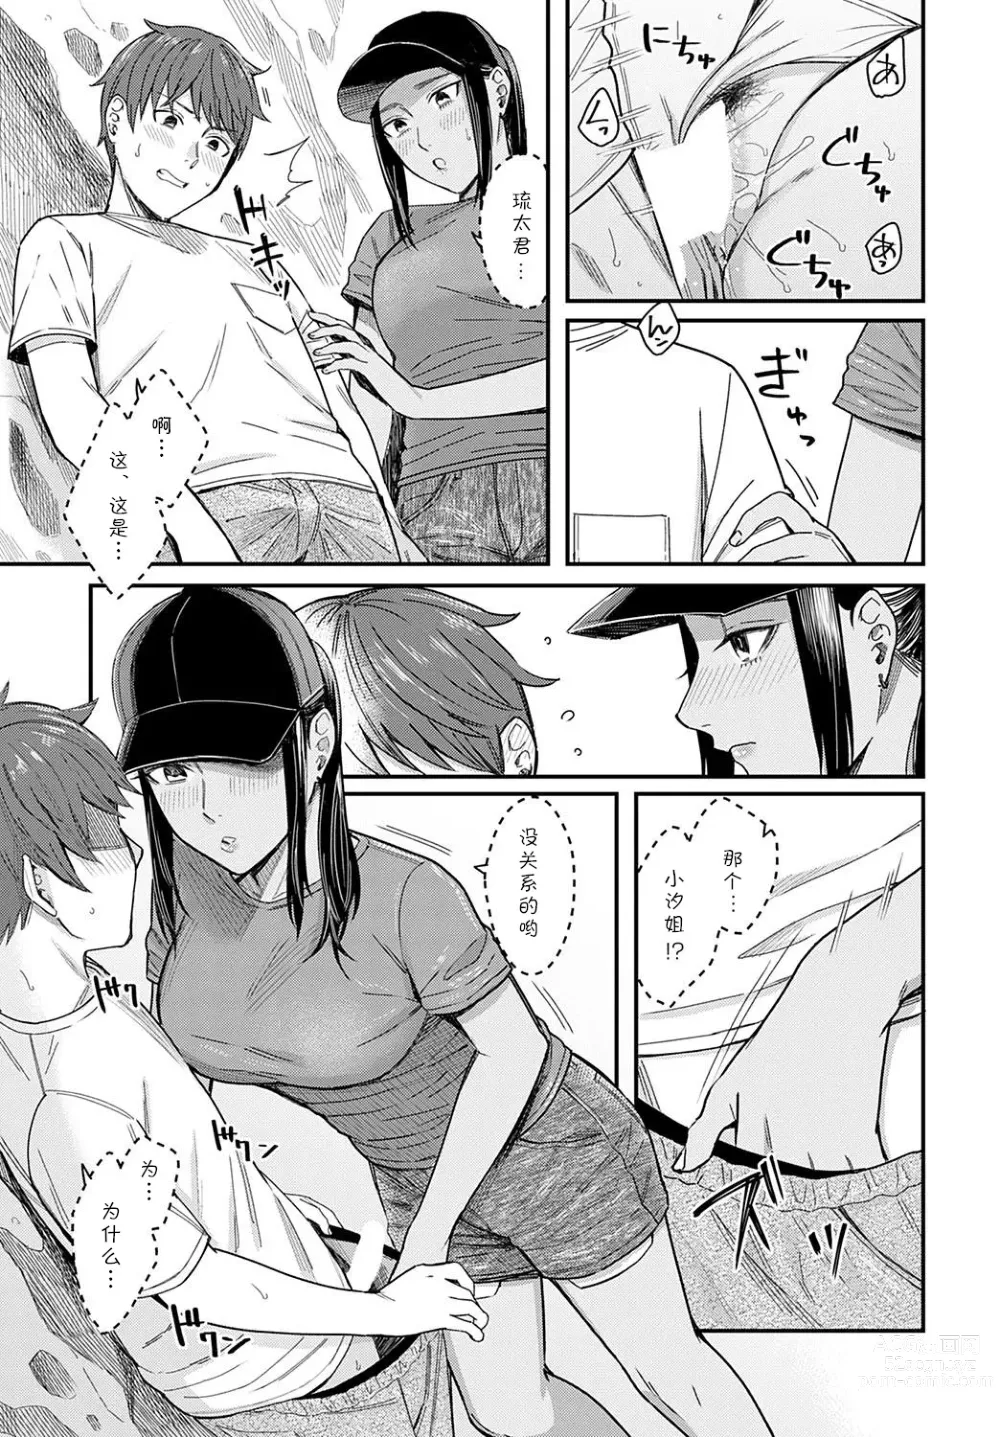 Page 9 of manga Shiosai